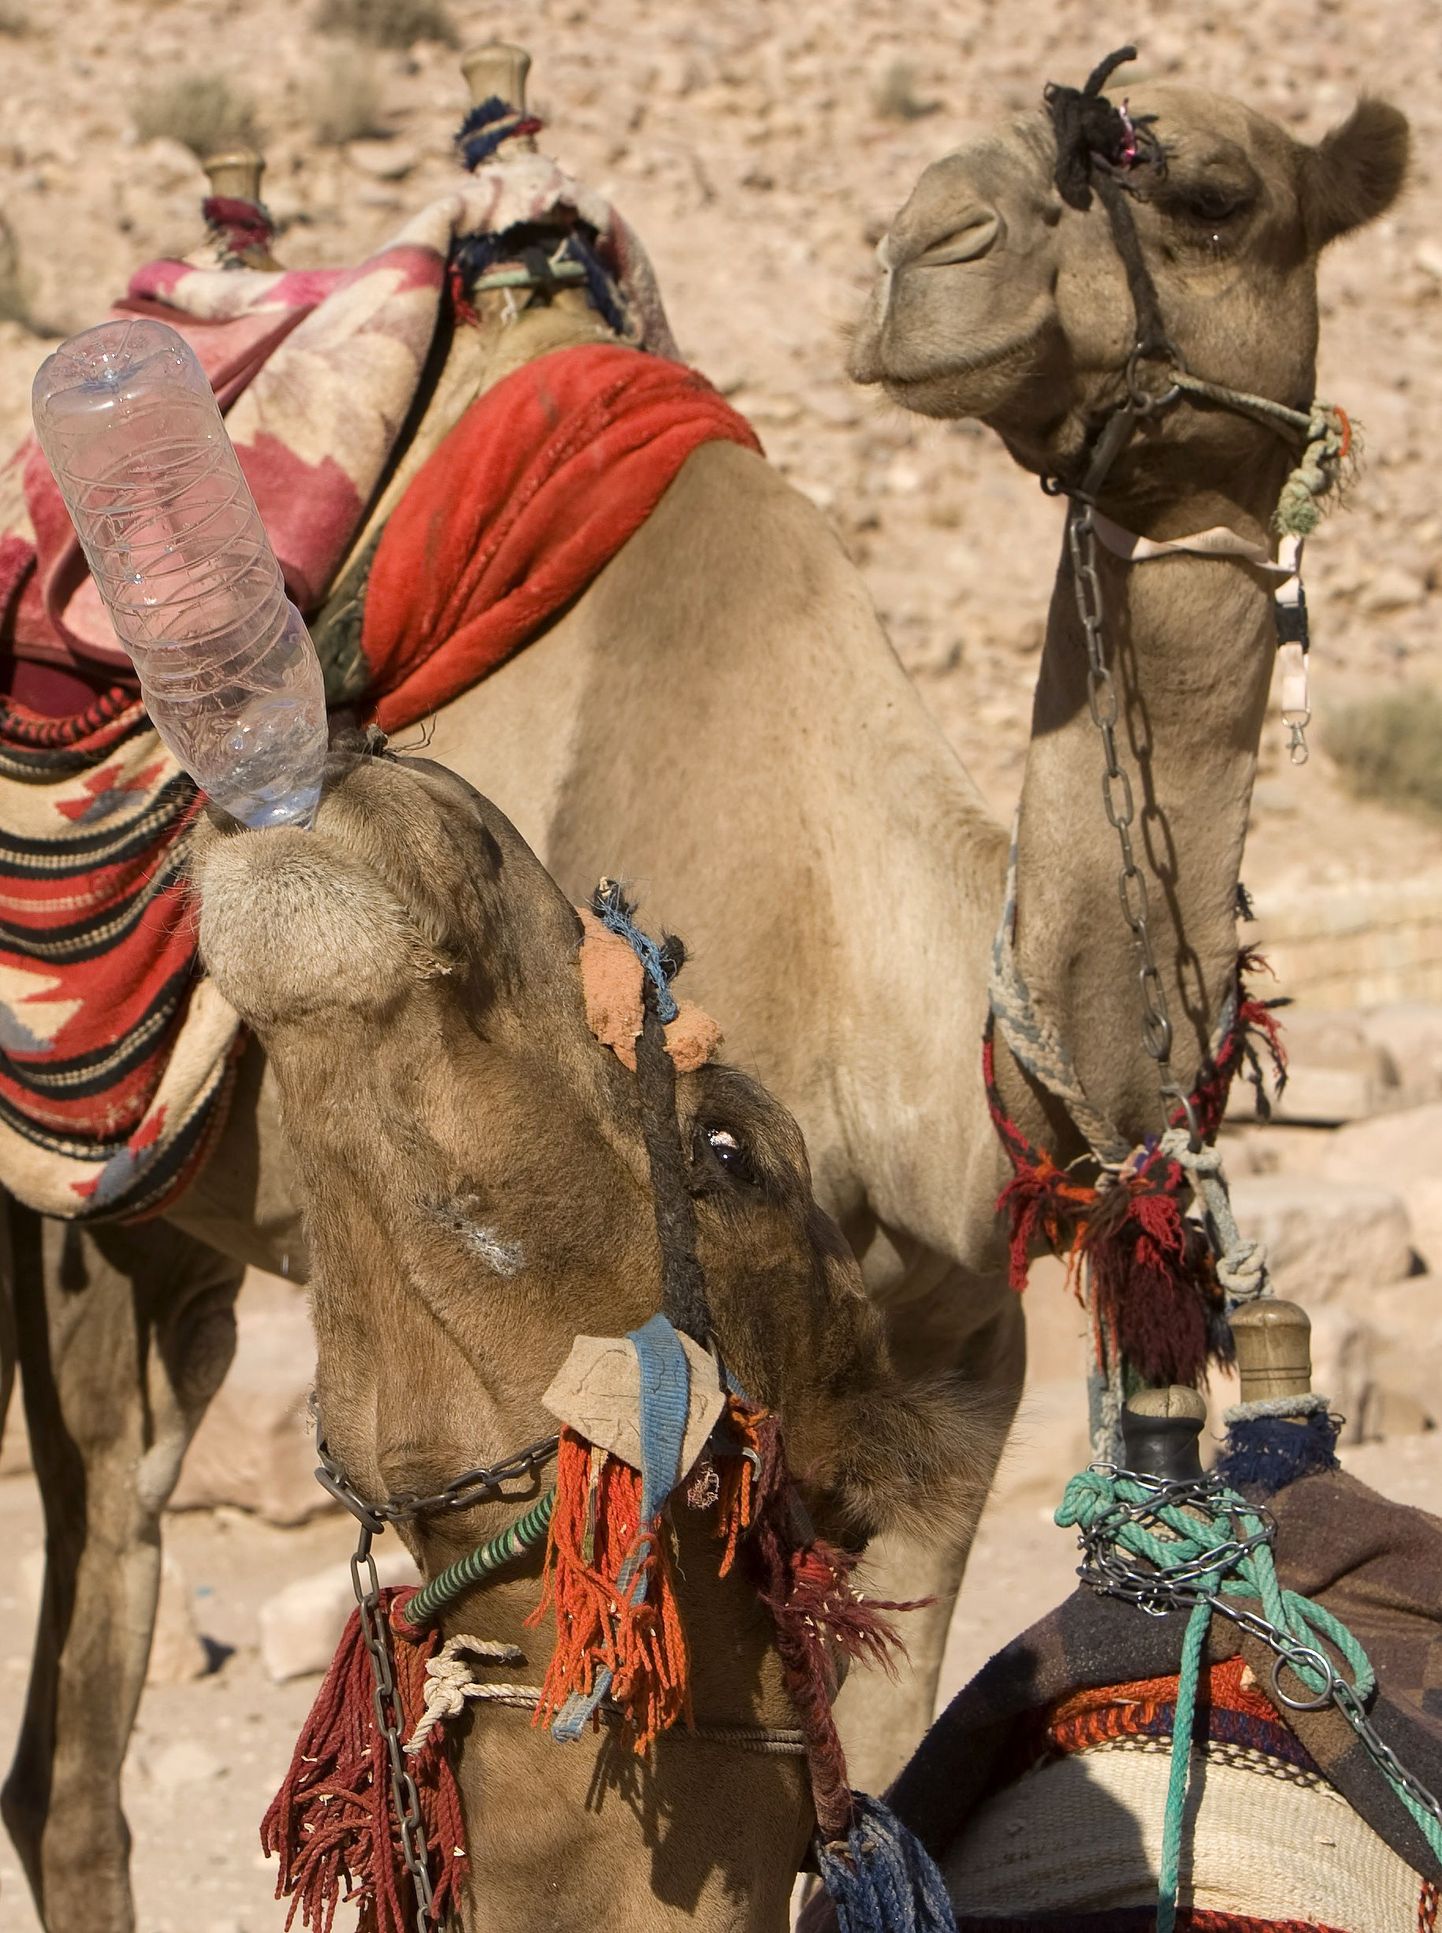 Noored kaamelid ei käitu enamasti agressiivselt, kuid võivad lemmikloomana pererahvale ohtlikuks muutuda.